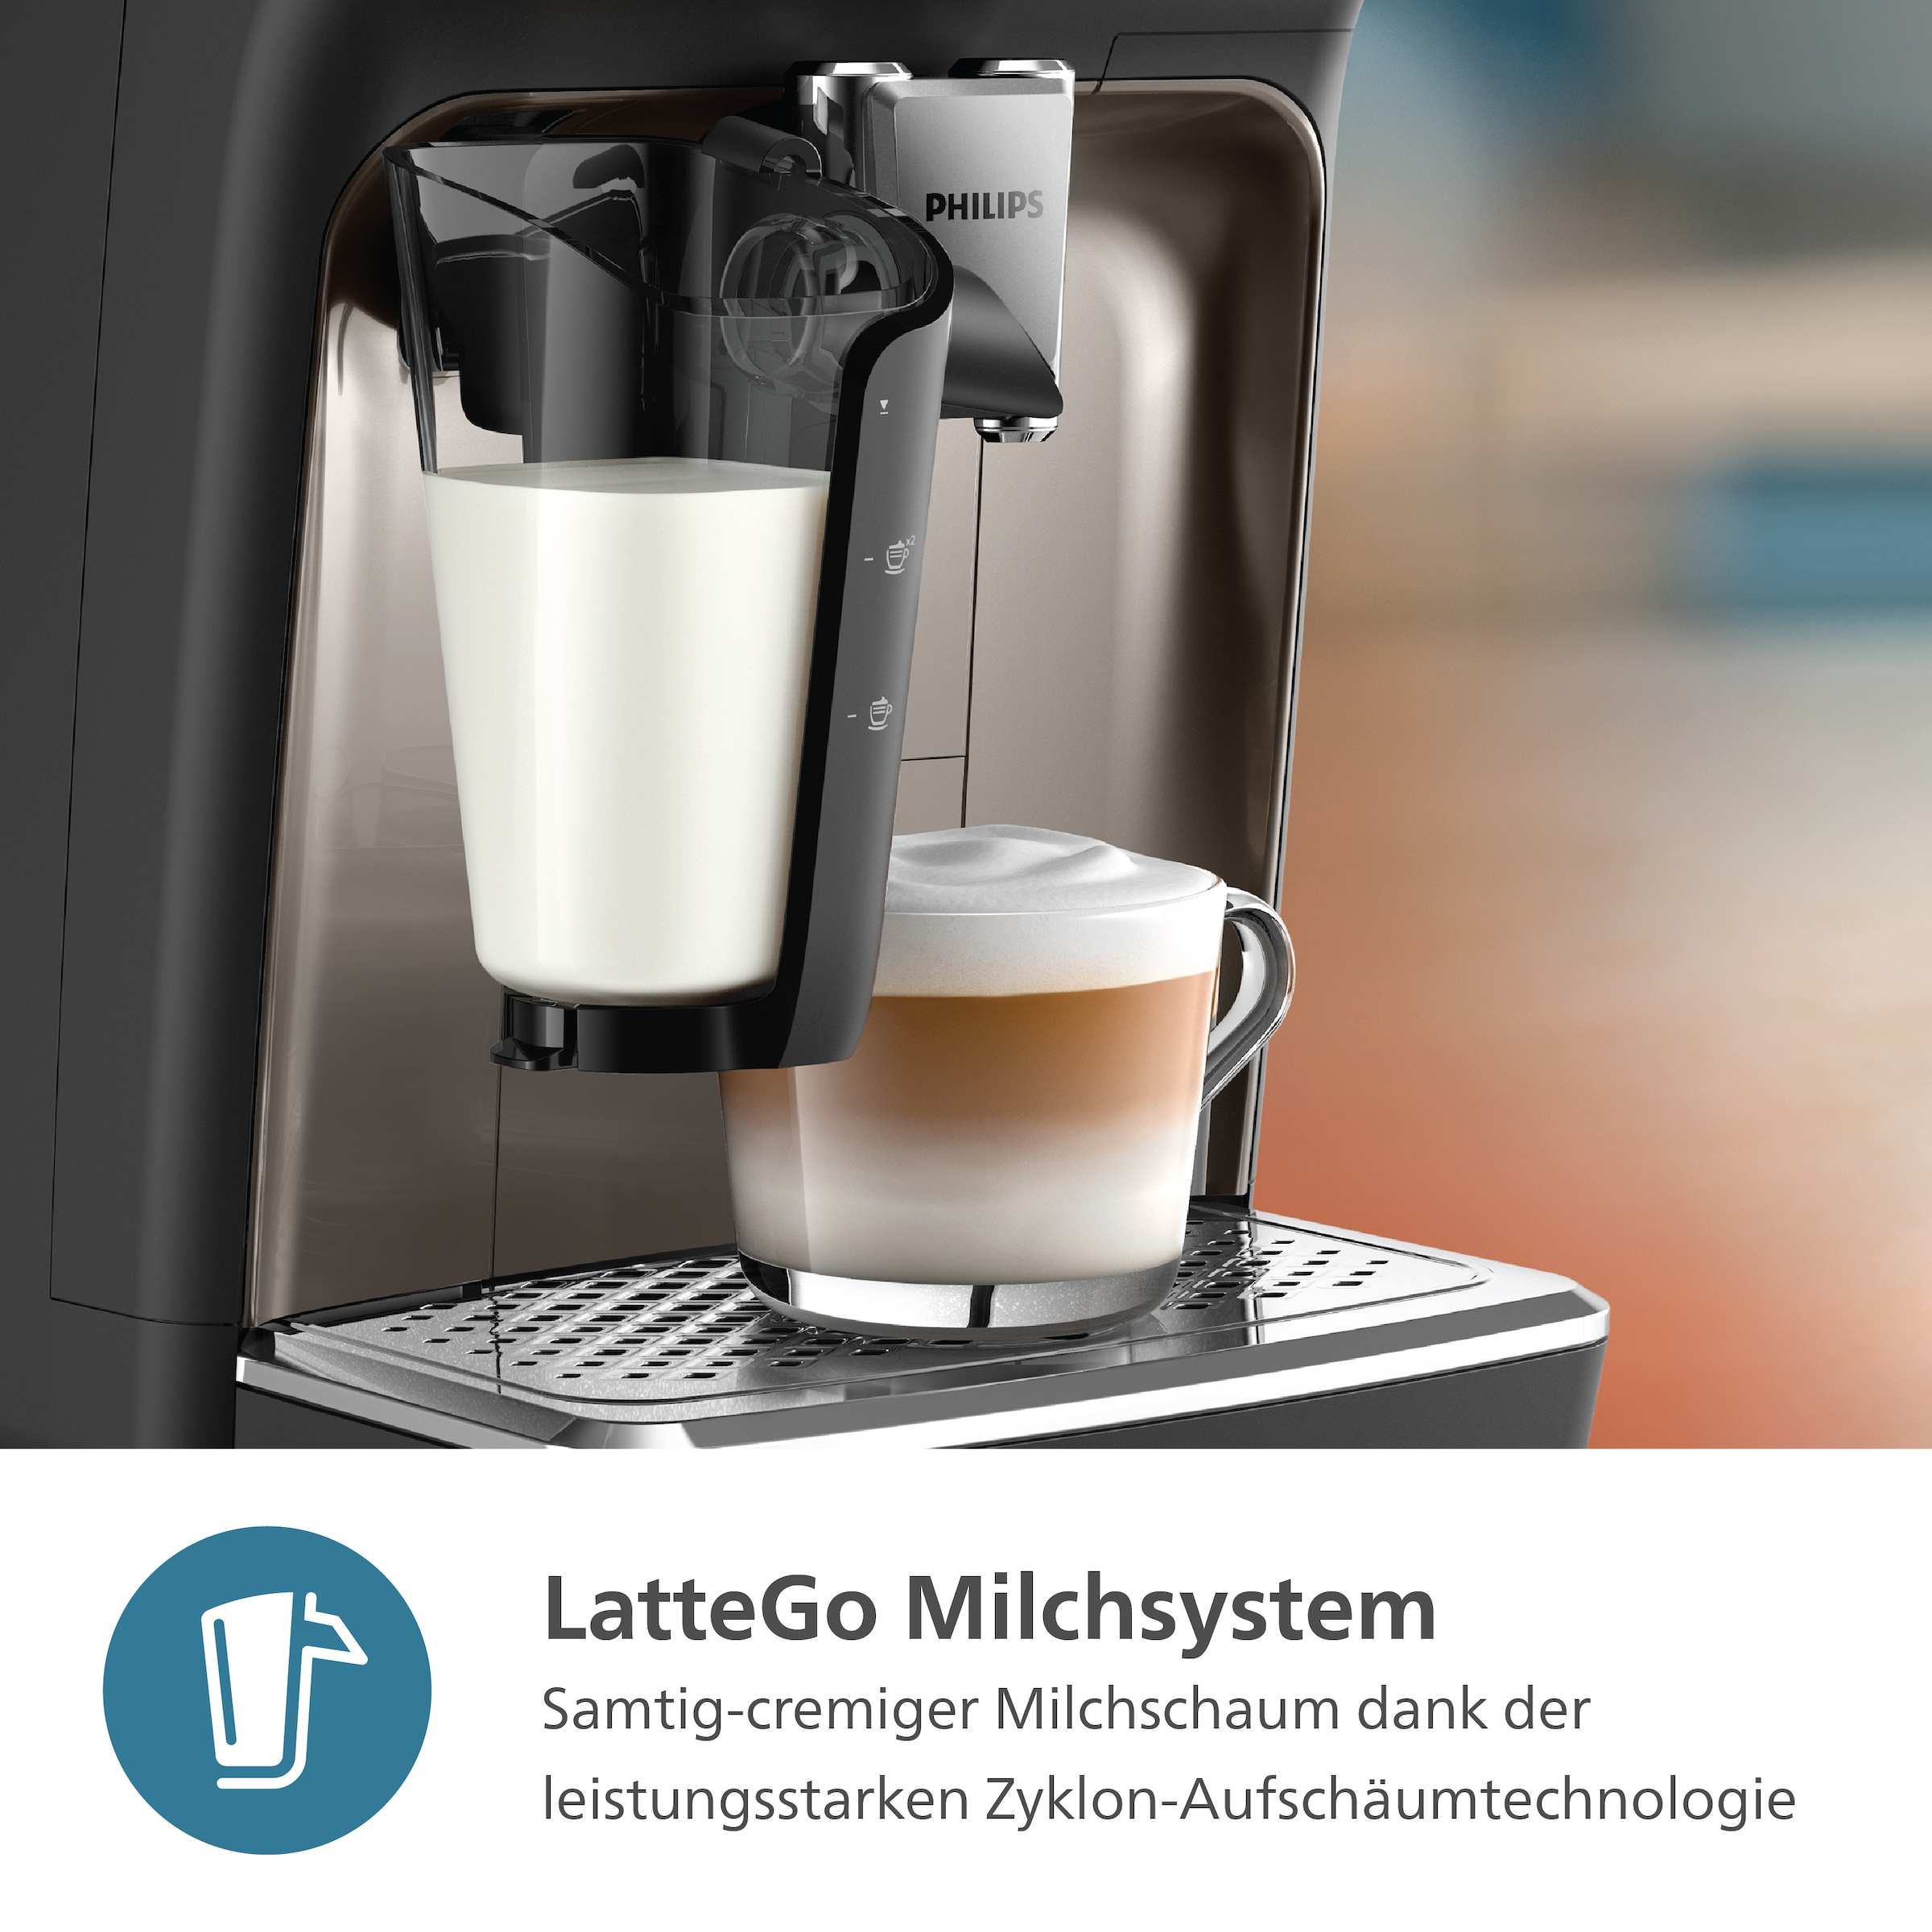 verchromt 4 mit »EP2336/40 BAUR 2300 Philips Schwarz Kaffeevollautomat Series«, Kaffeespezialitäten, | LatteGo-Milchsystem,